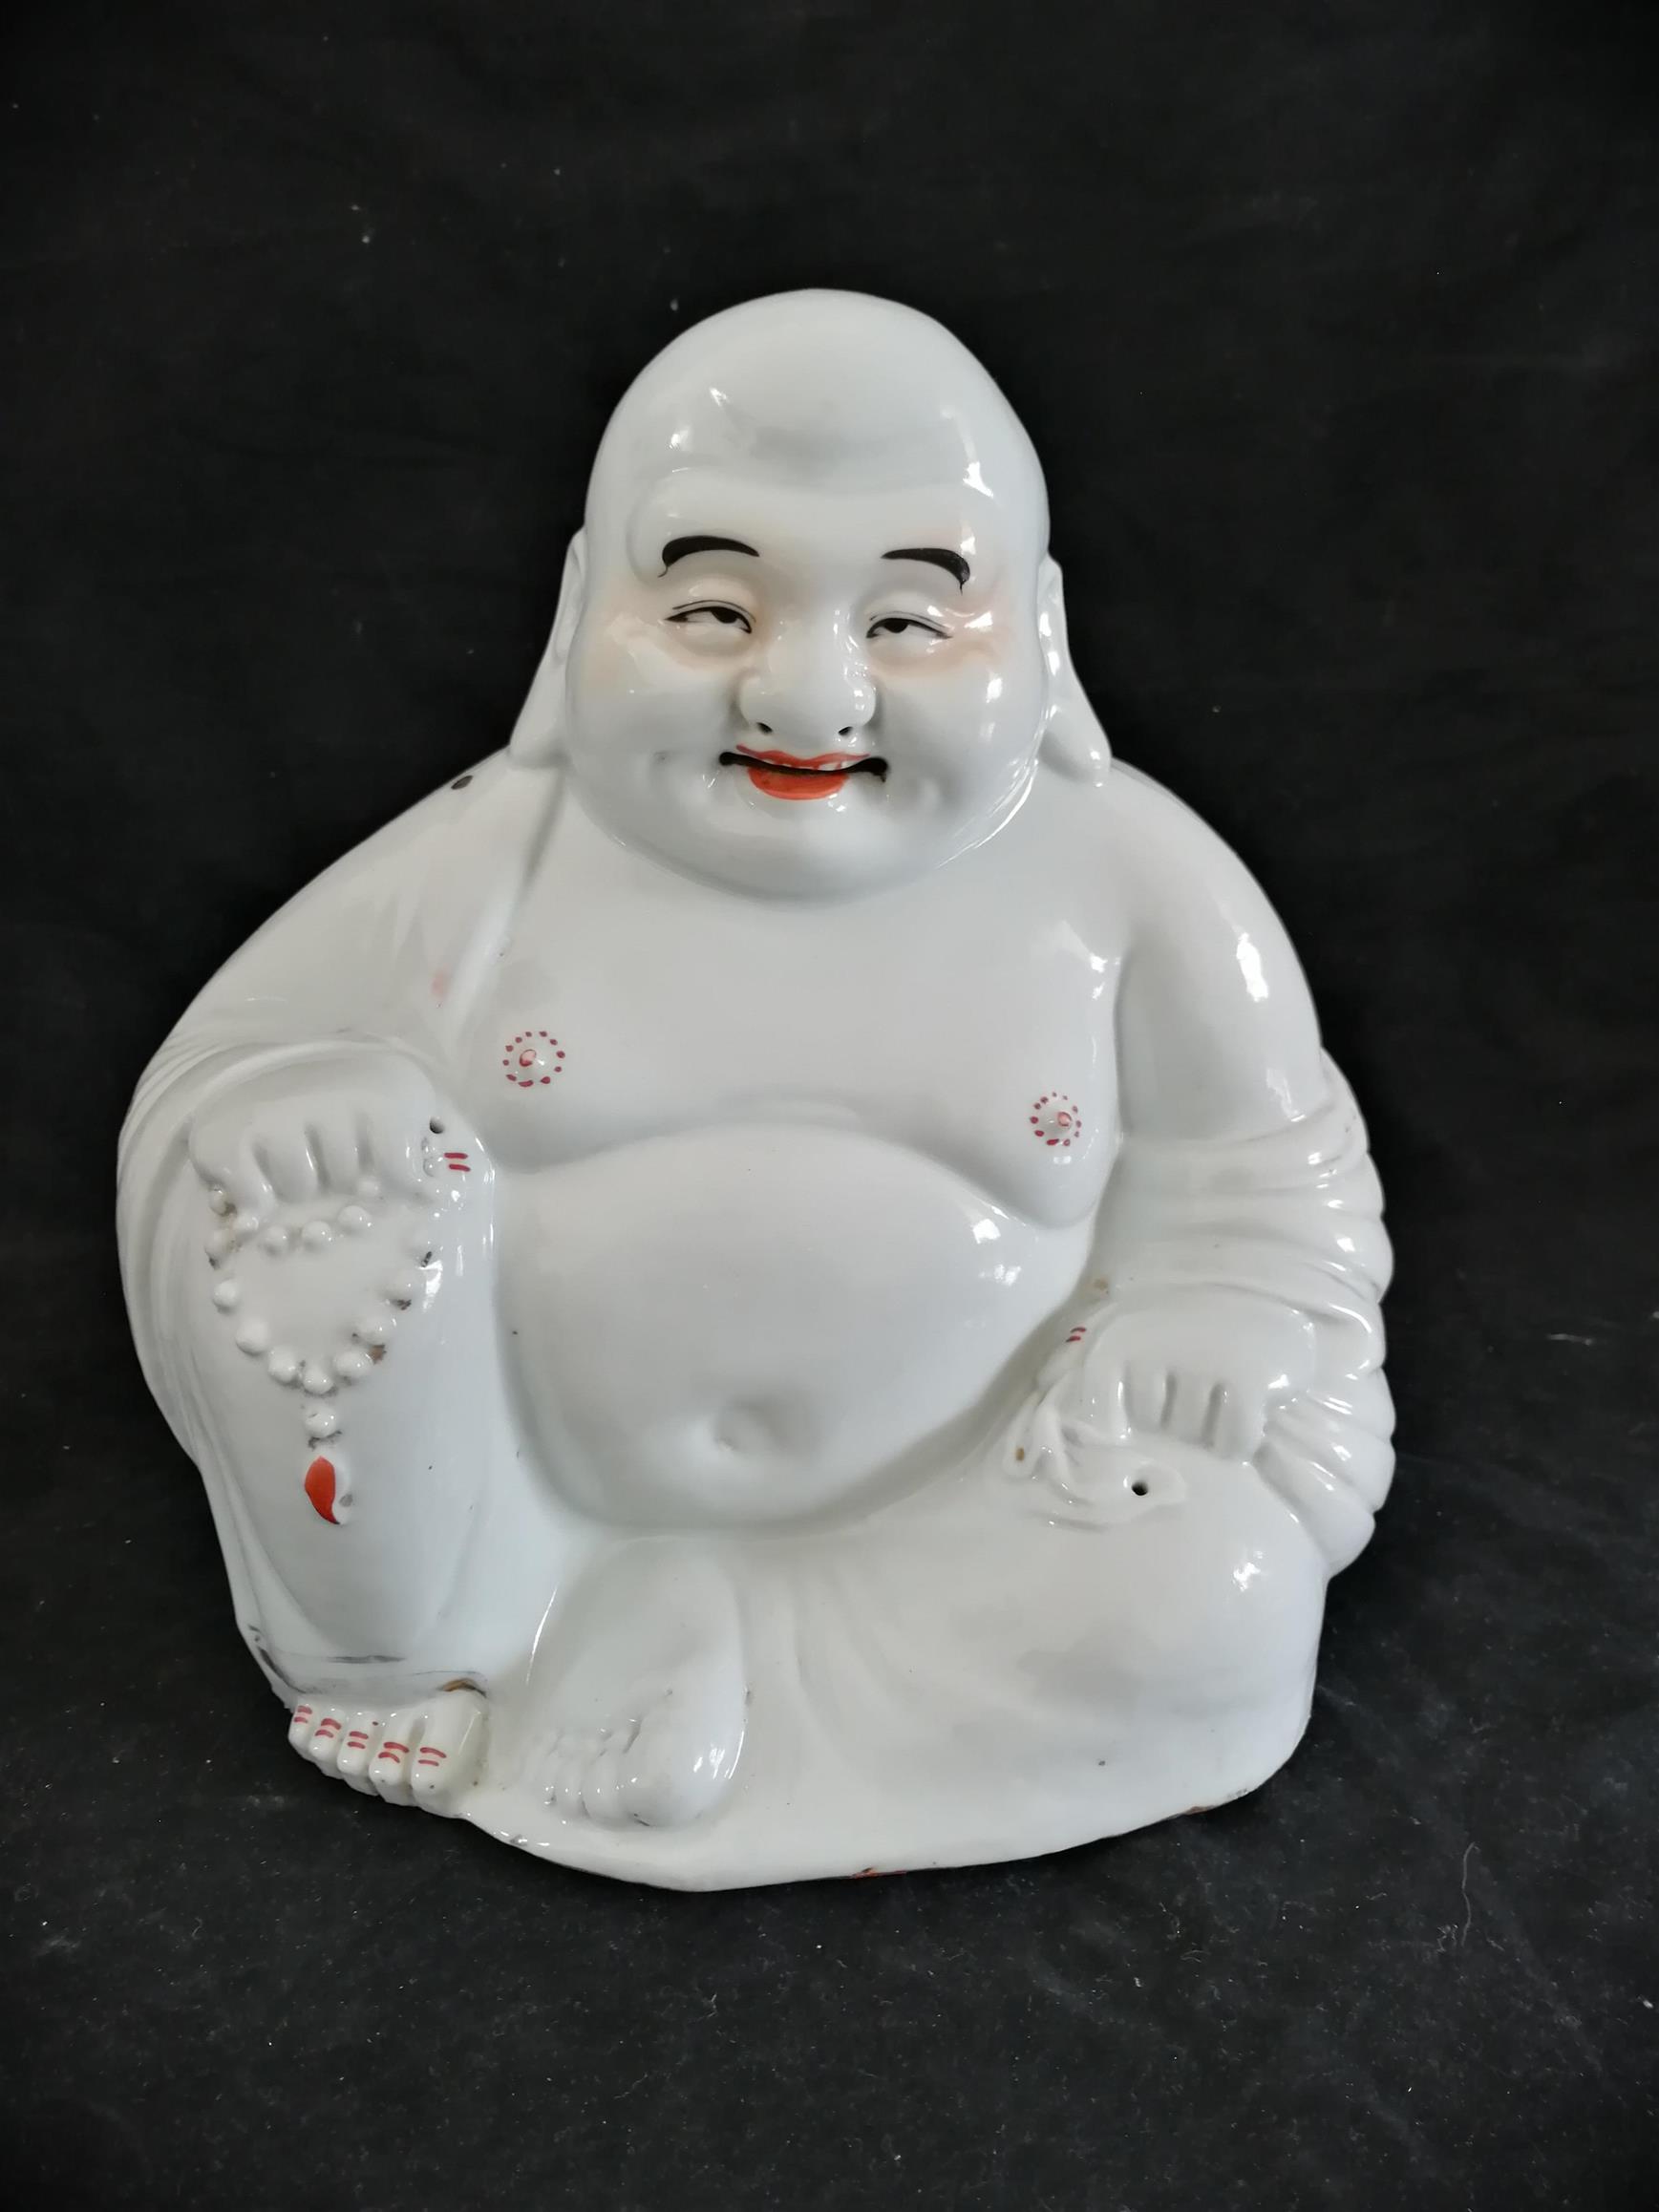 银川古佛像修复技术培训 南京美瓷工艺品有限公司